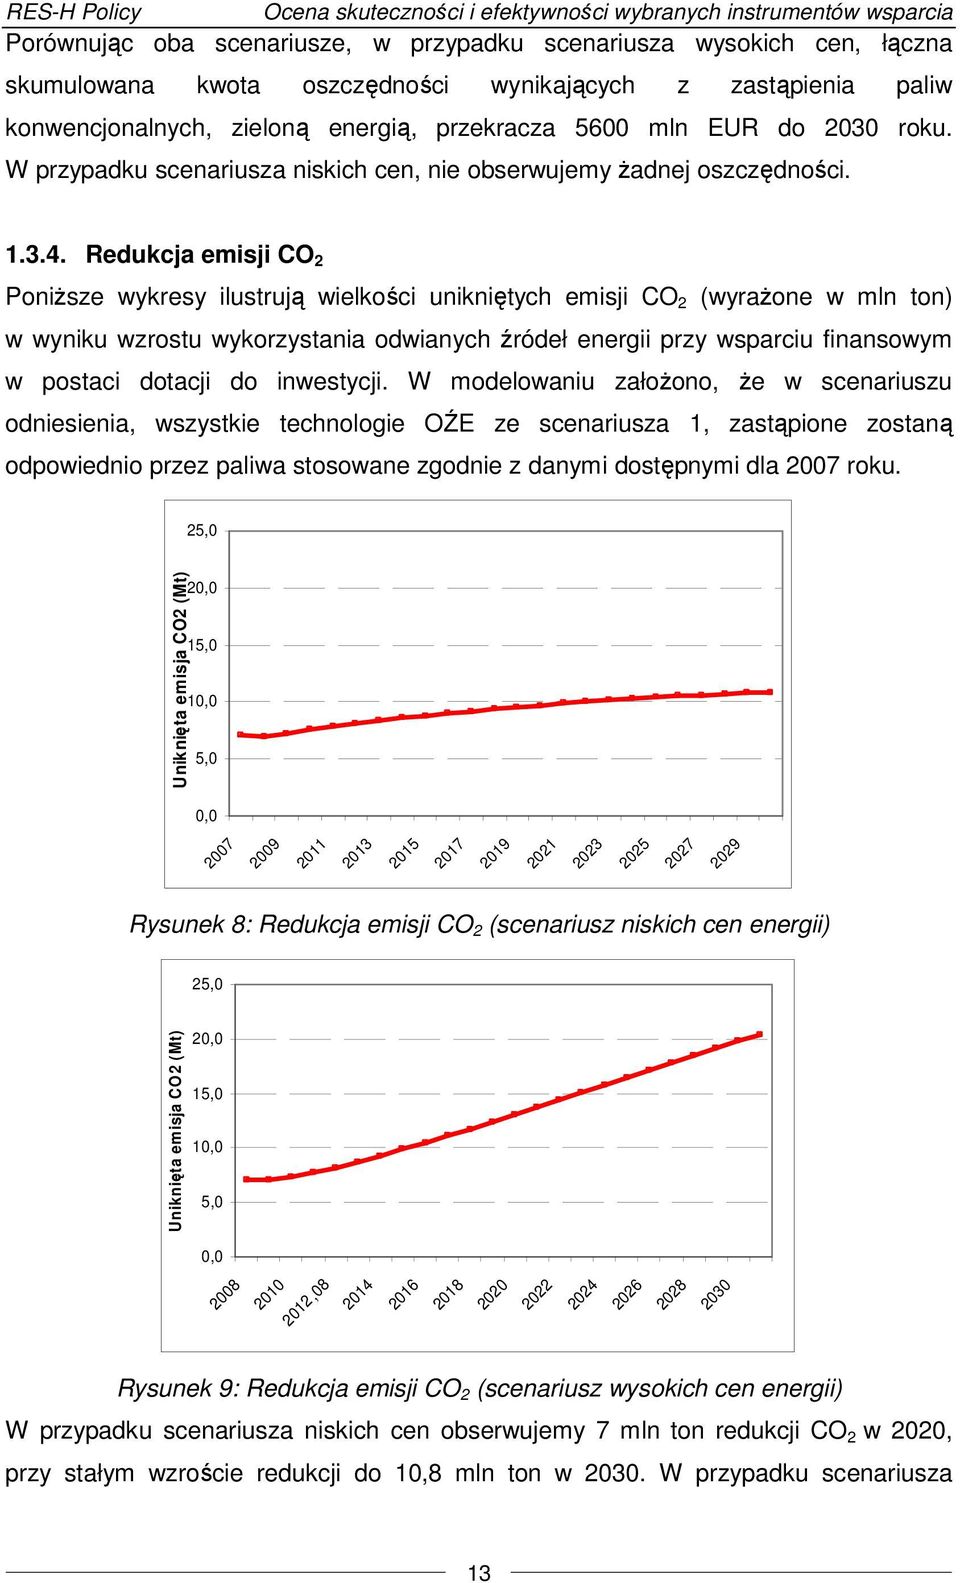 Redukcja emisji CO 2 Poniższe wykresy ilustrują wielkości unikniętych emisji CO 2 (wyrażone w mln ton) w wyniku wzrostu wykorzystania odwianych źródeł energii przy wsparciu finansowym w postaci